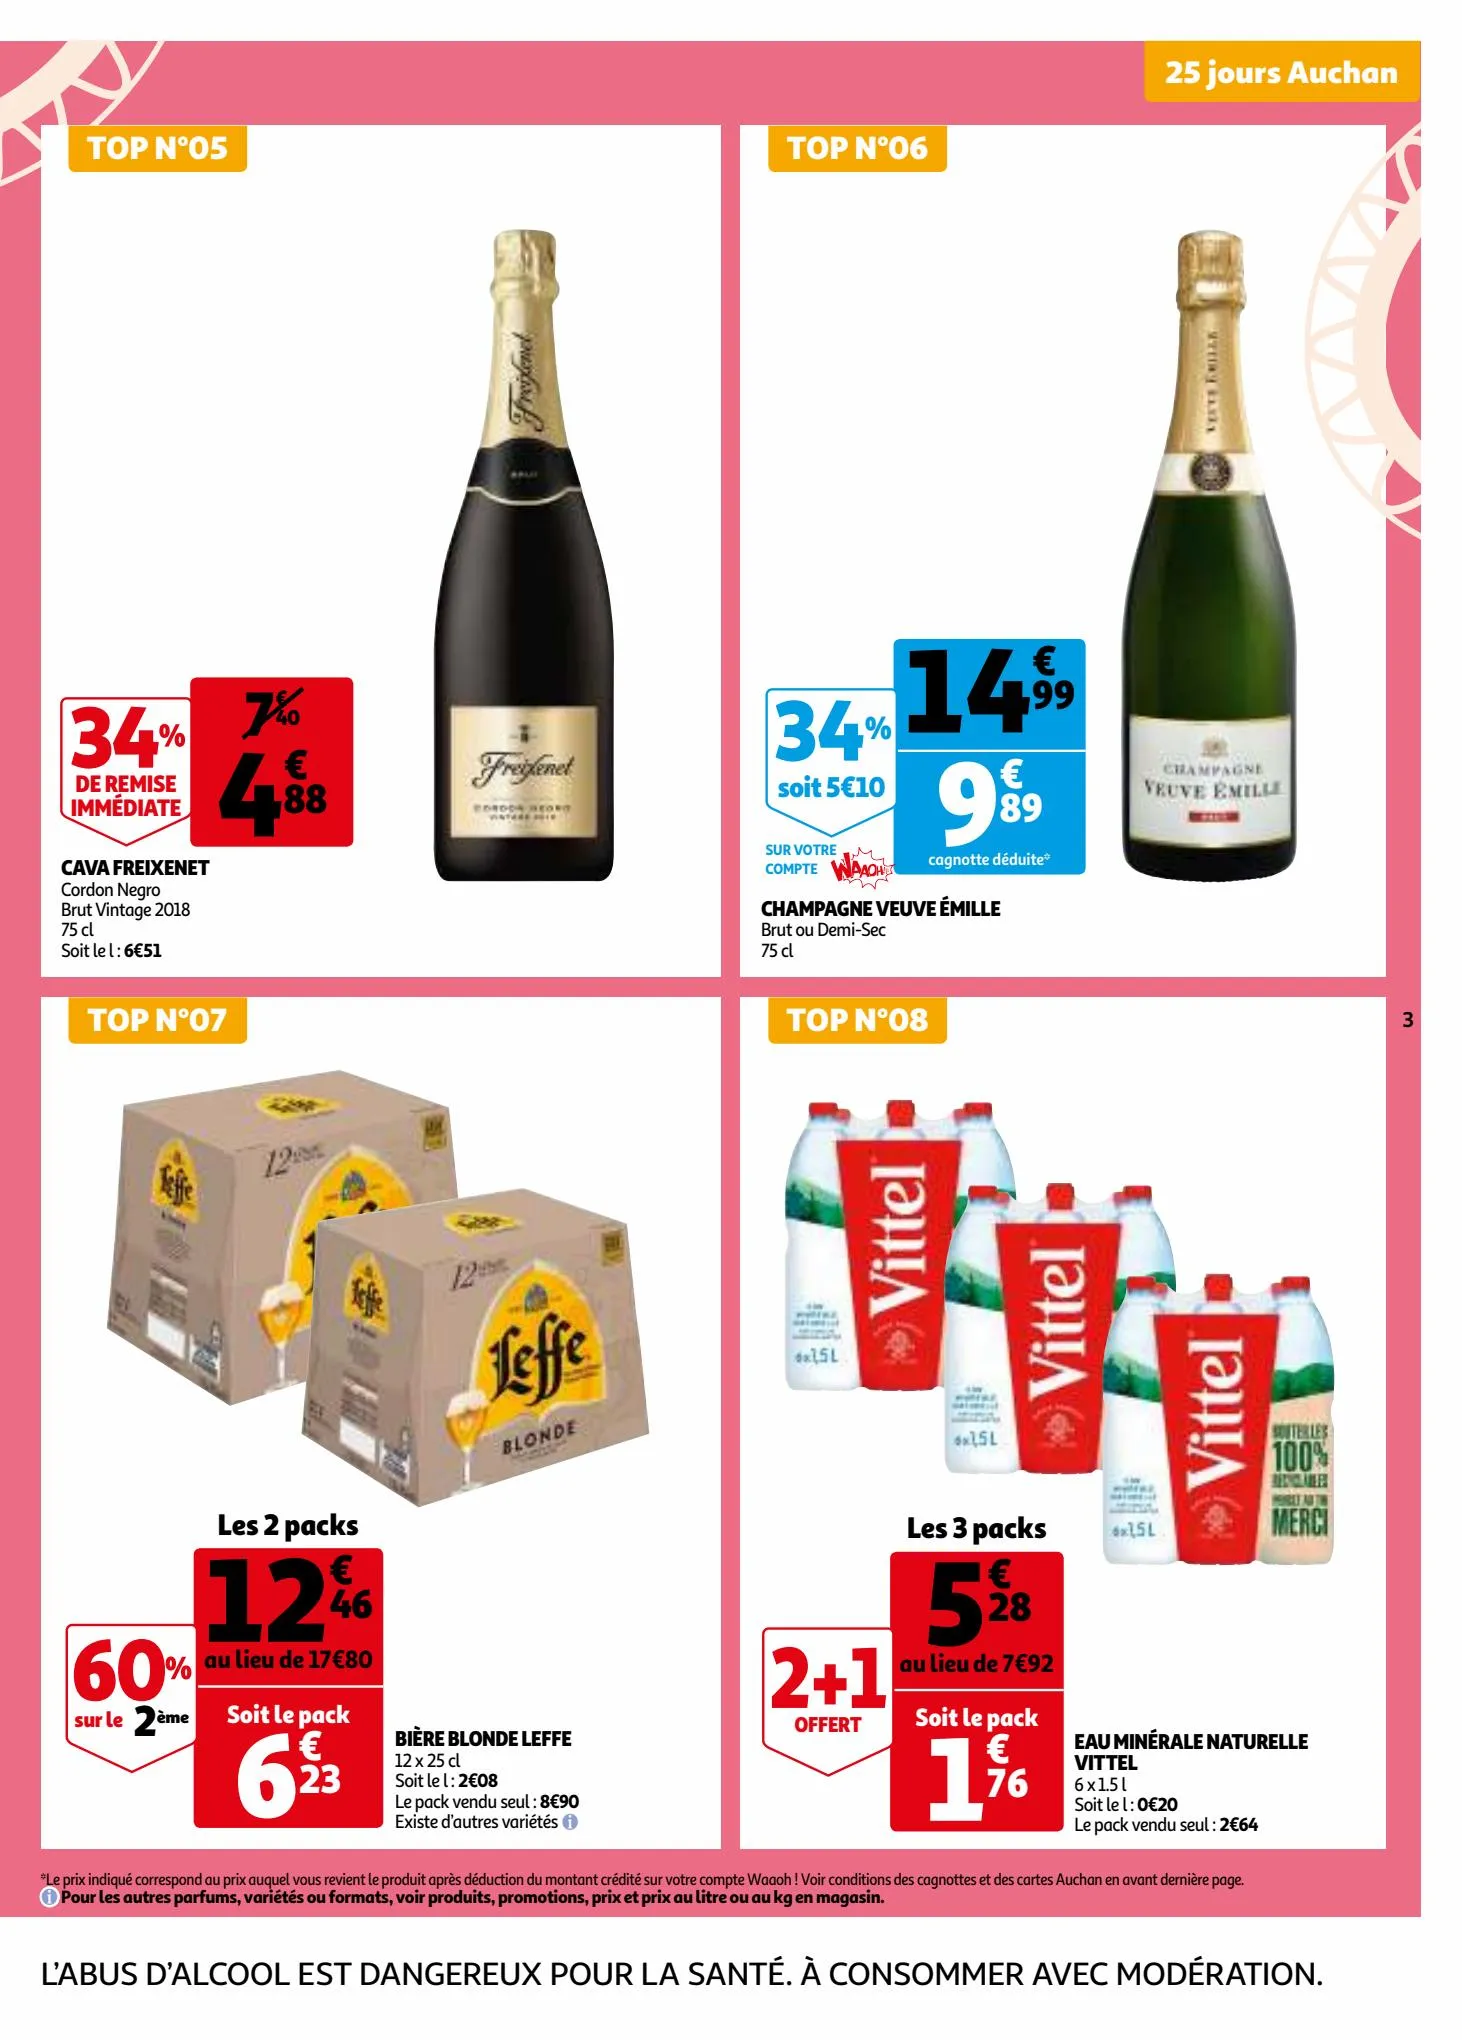 Catalogue 25 jours Auchan, page 00003